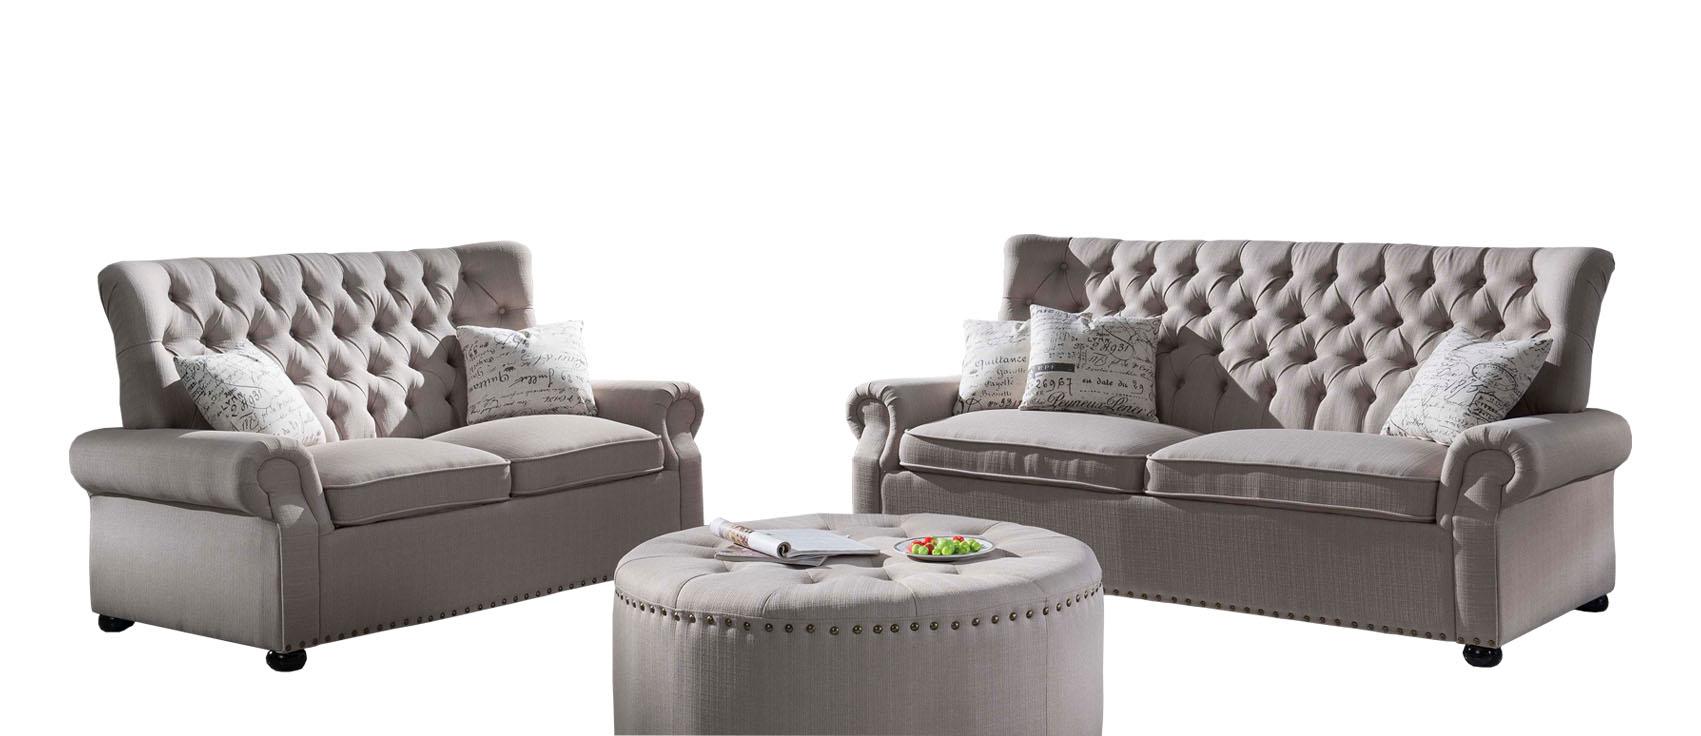 McFerran Furniture SF1706 Sofa Set